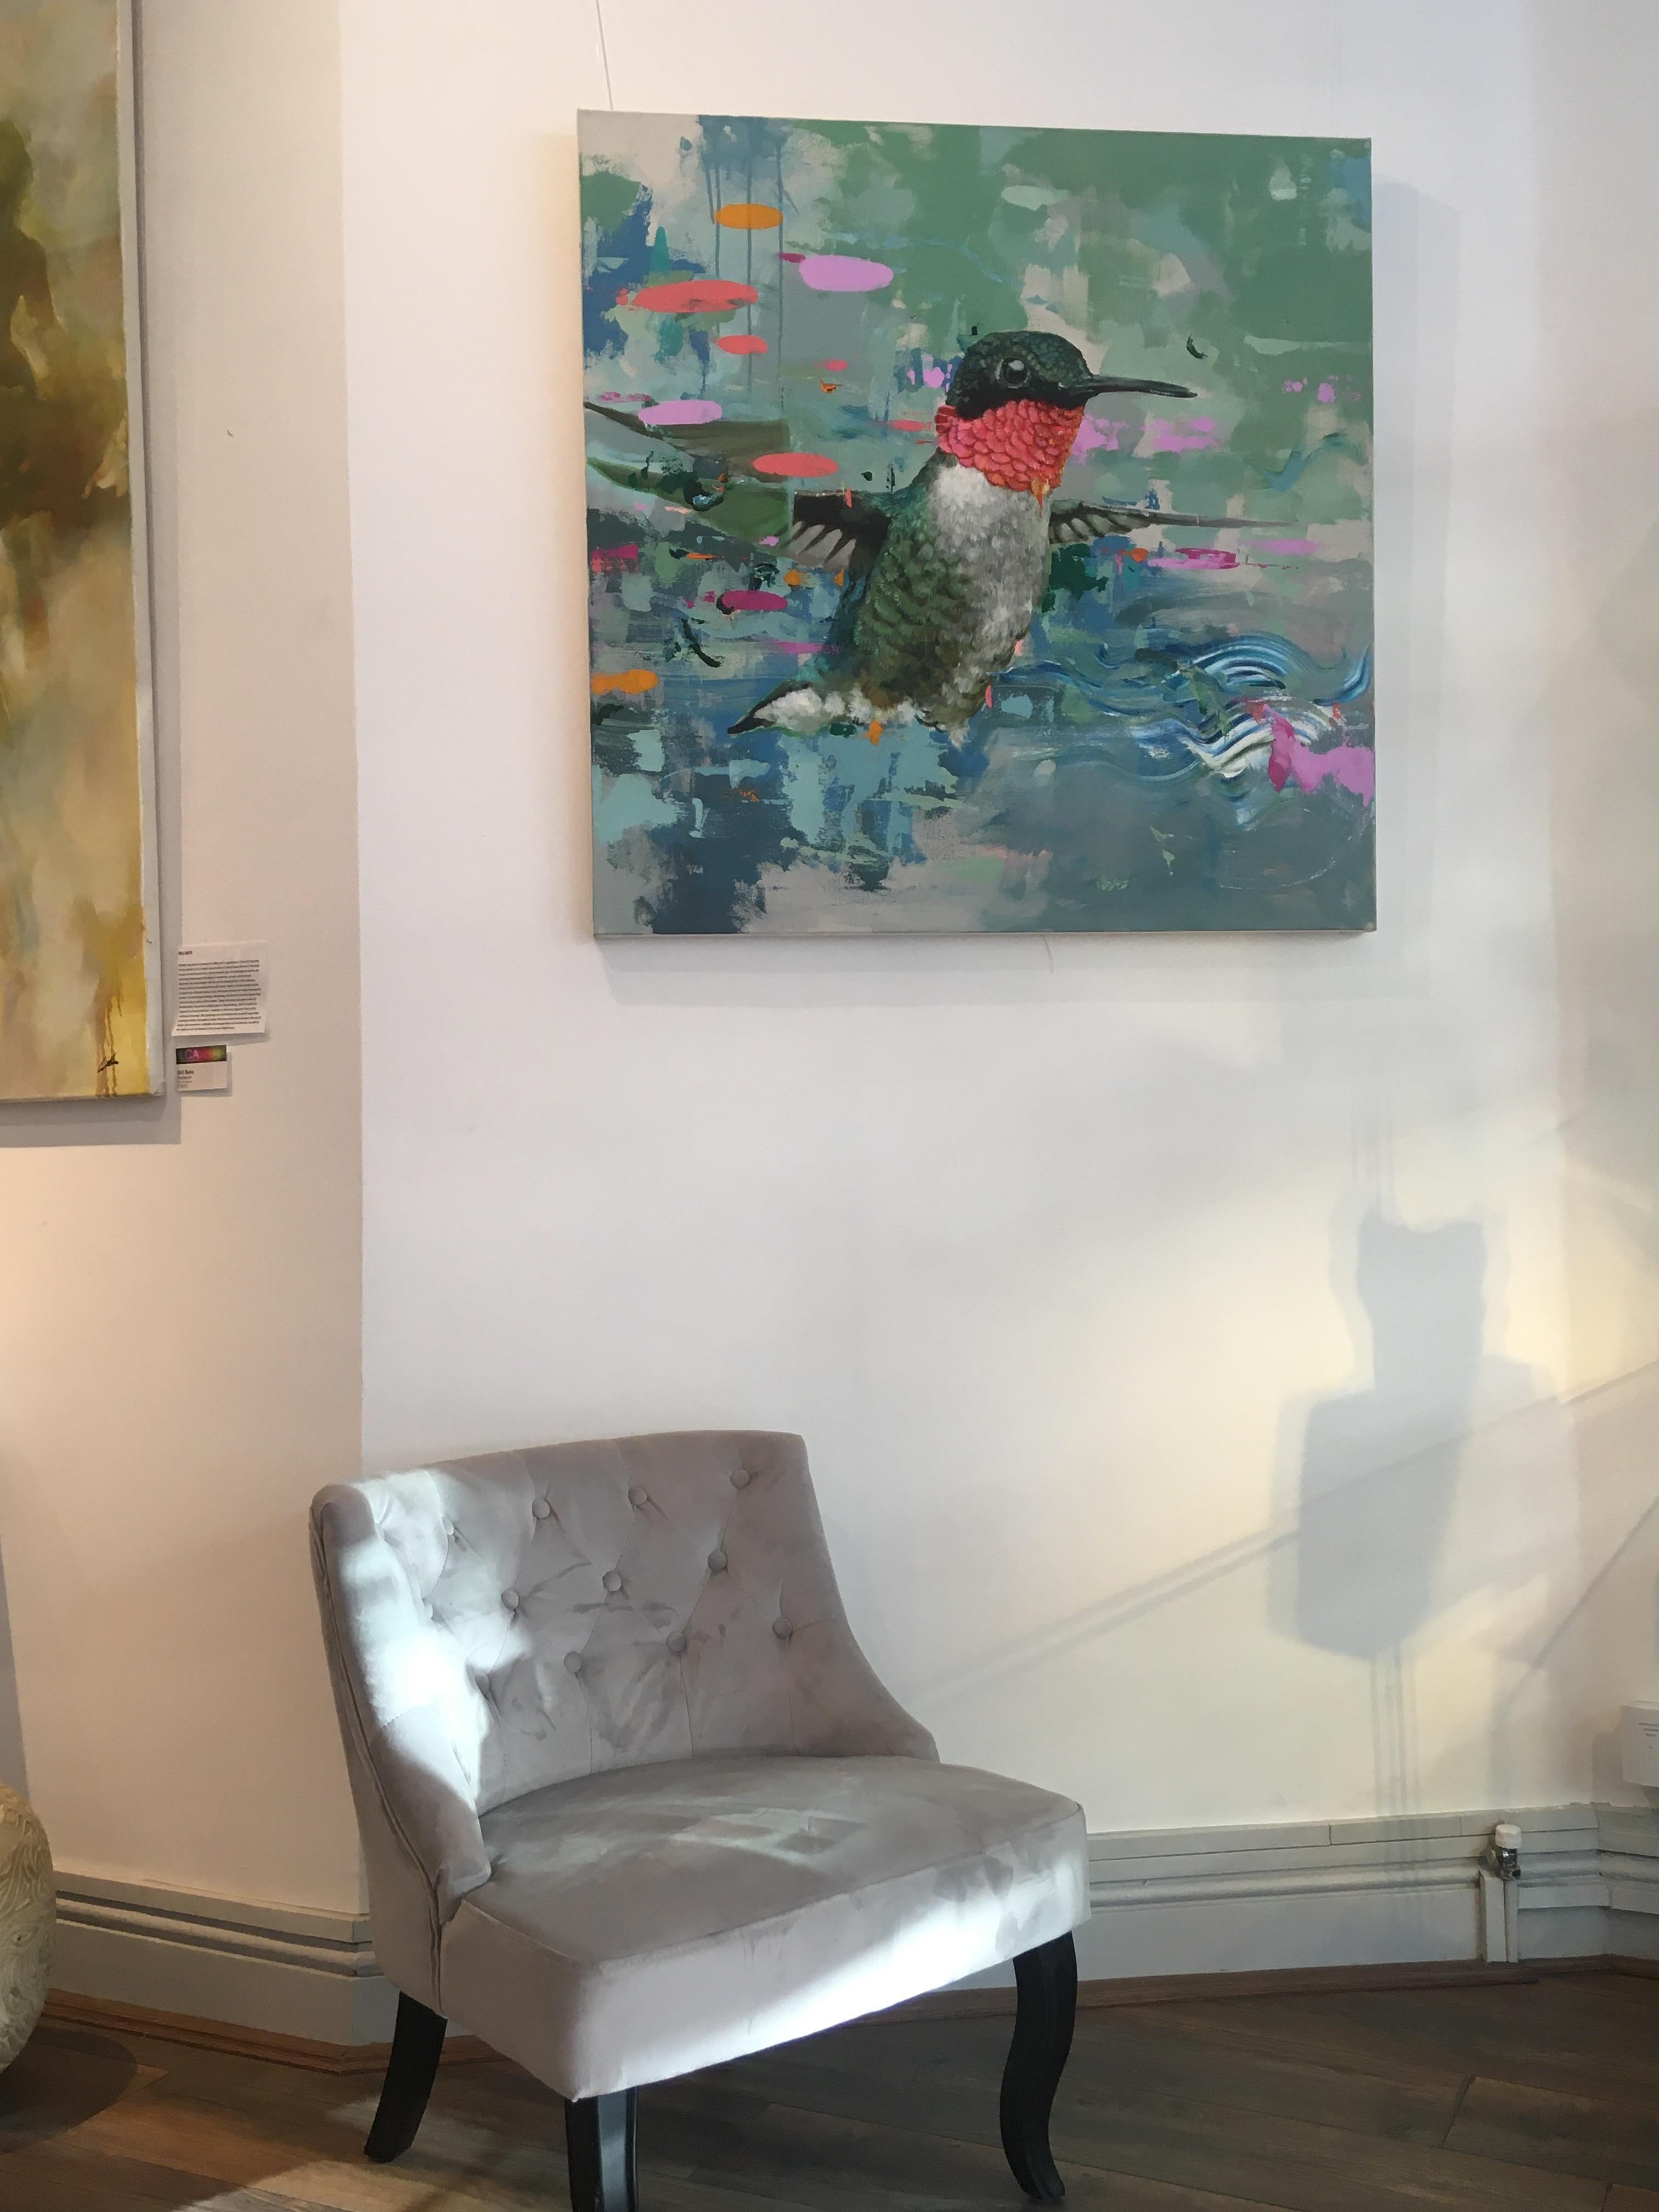 House of Devayne - contemporary animal hummingbird acrylic painting 2